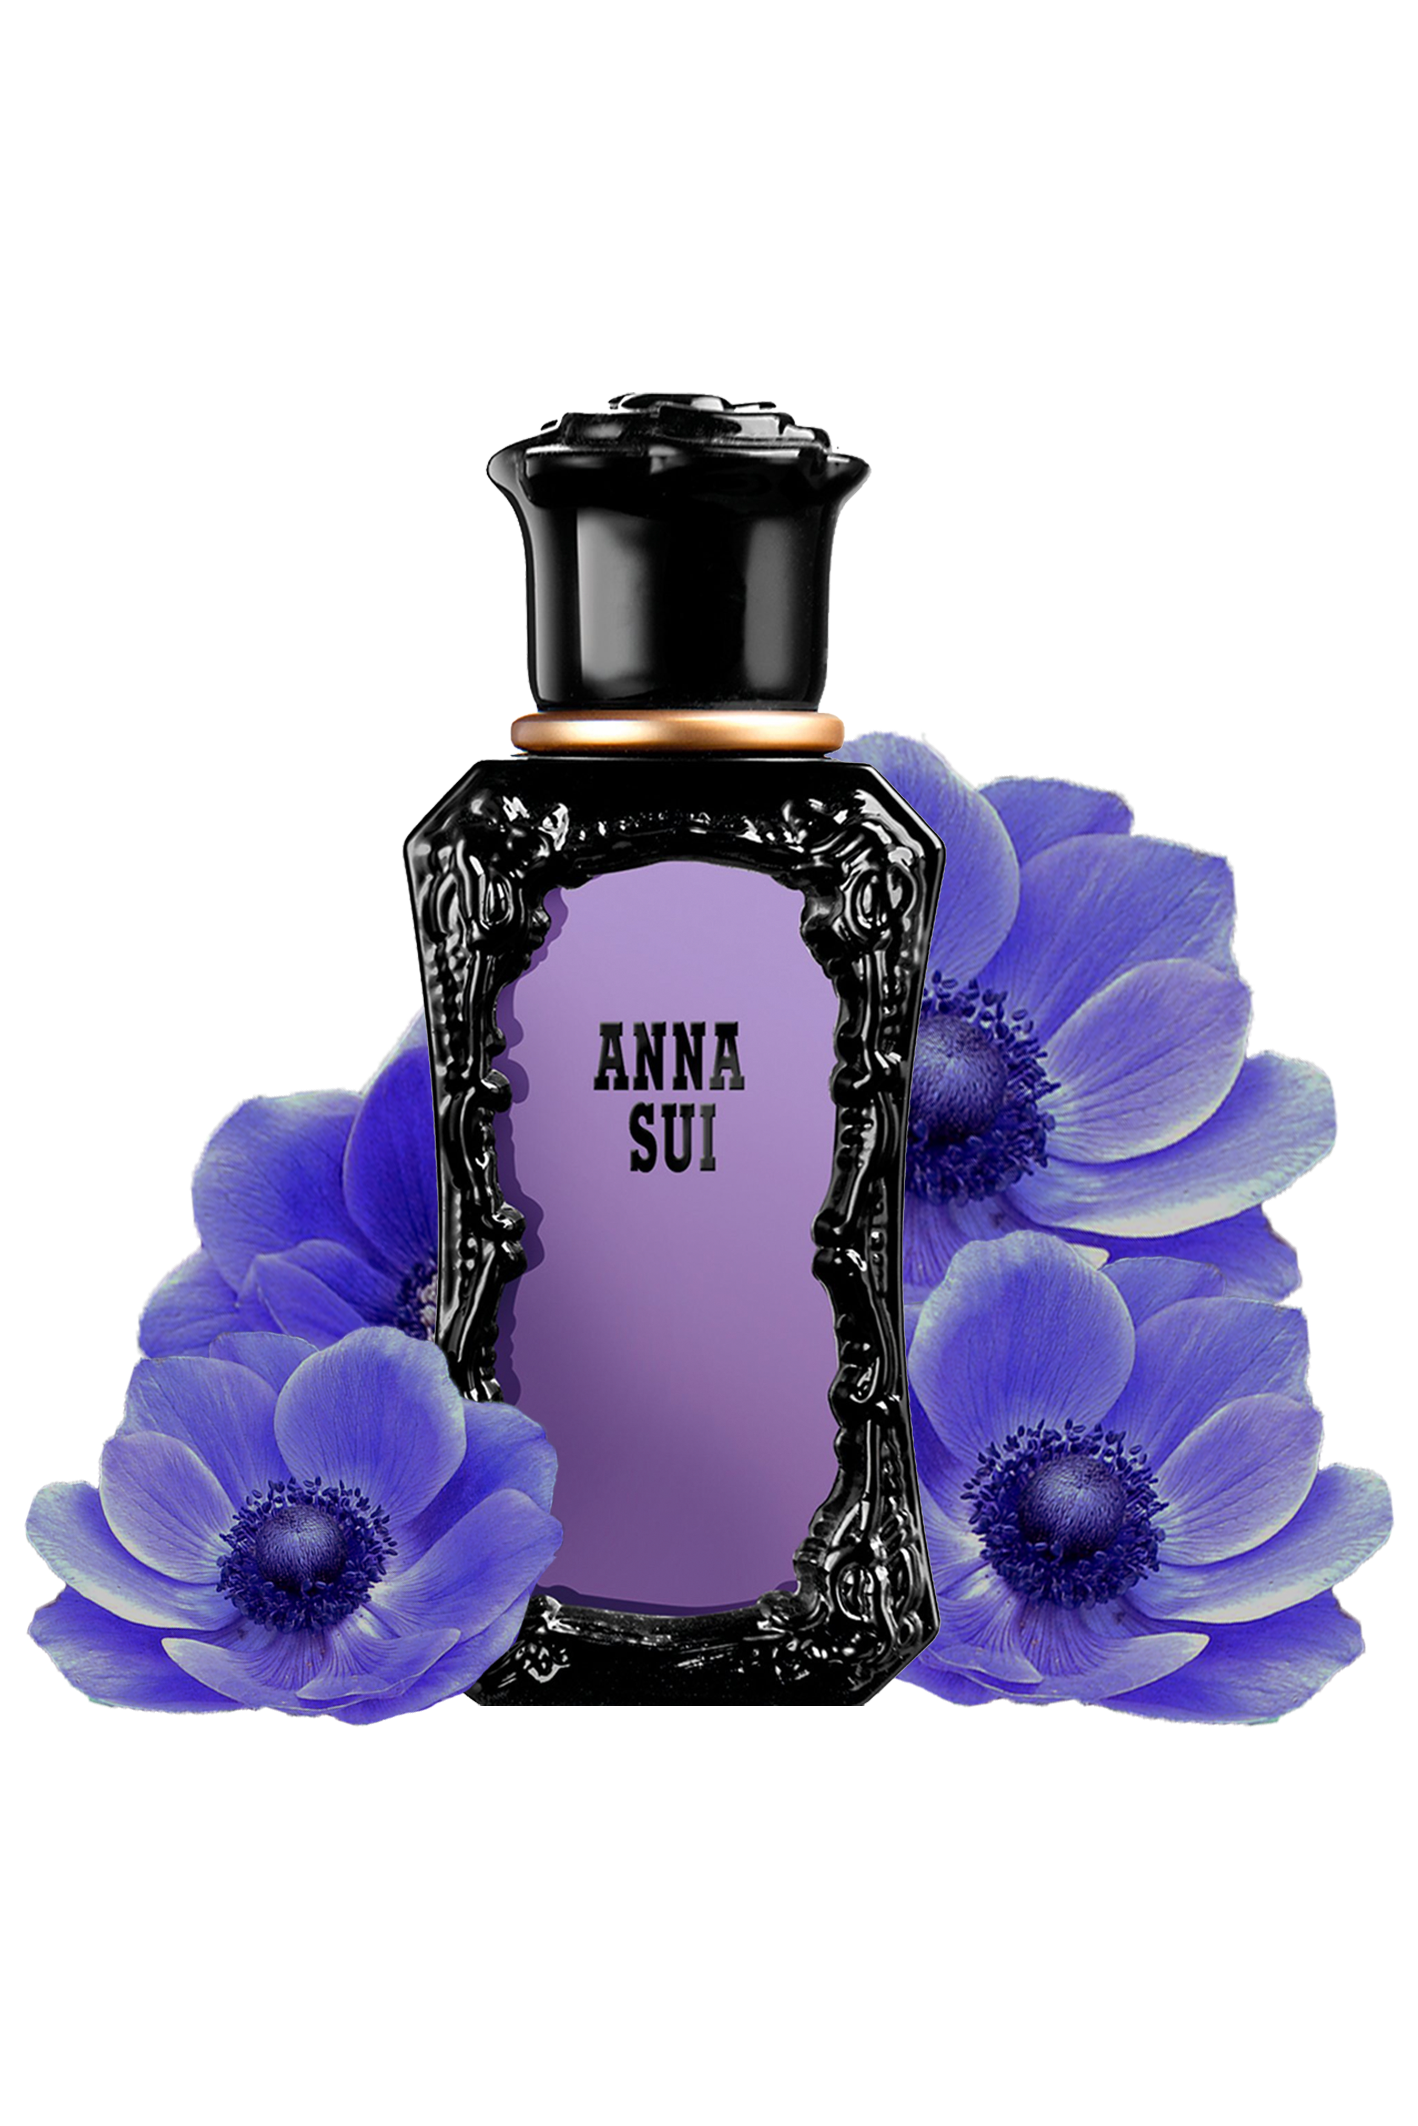 紫黑色的瓶身采用了装饰艺术风格，喷雾器位于带有金色圆环的黑色瓶盖之下。